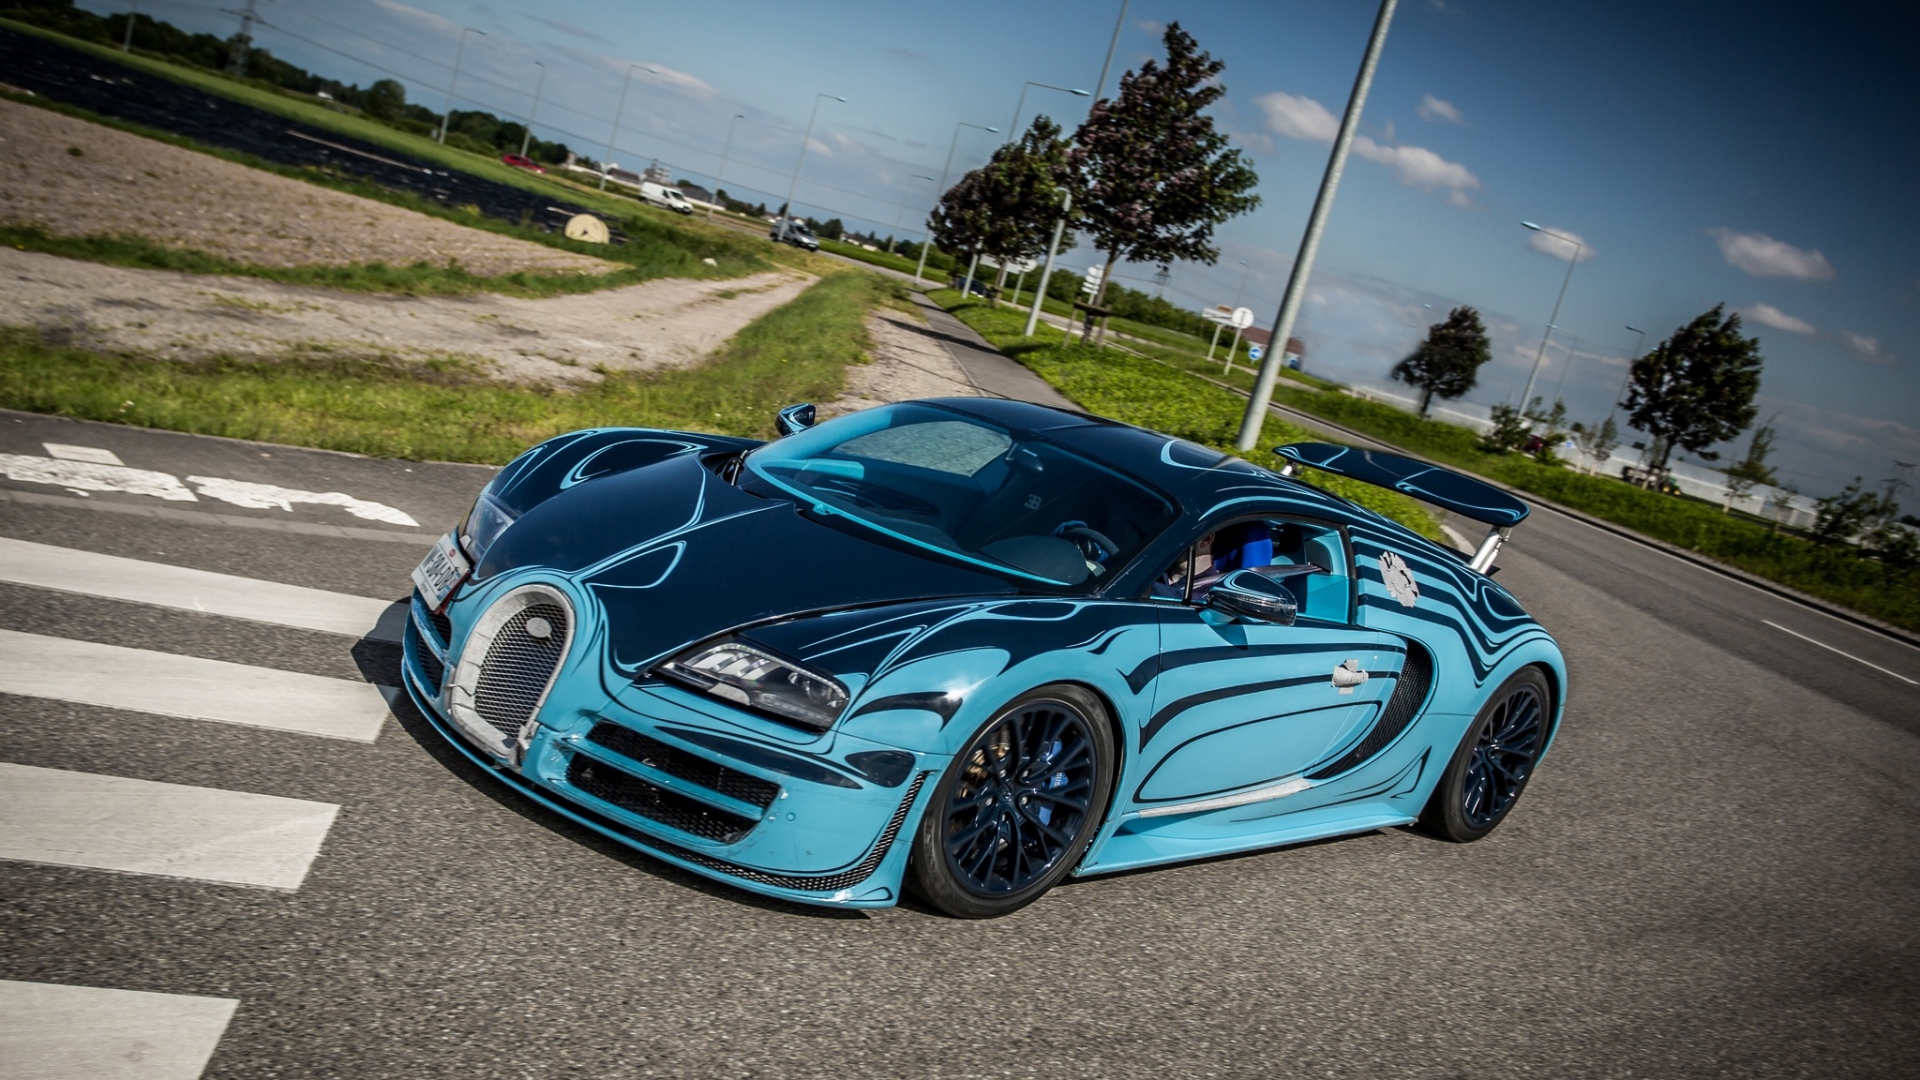 Bugatti Chiron Hd Wallpapers 1080p